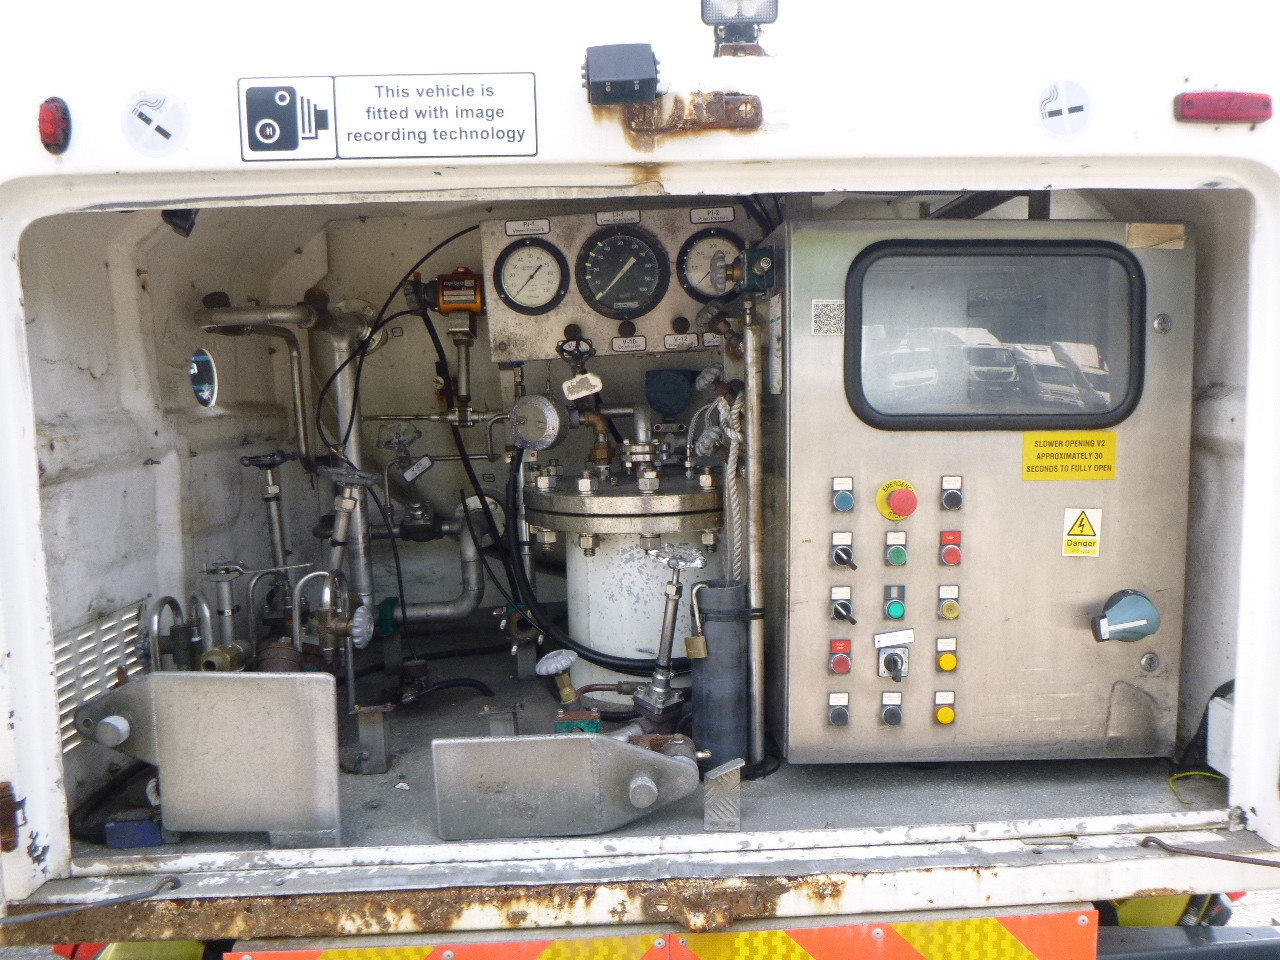 Cisternové vozidlo pro dopravu plynu D.A.F. LF 55.180 4x2 RHD ARGON gas truck 5.9 m3: obrázek 6